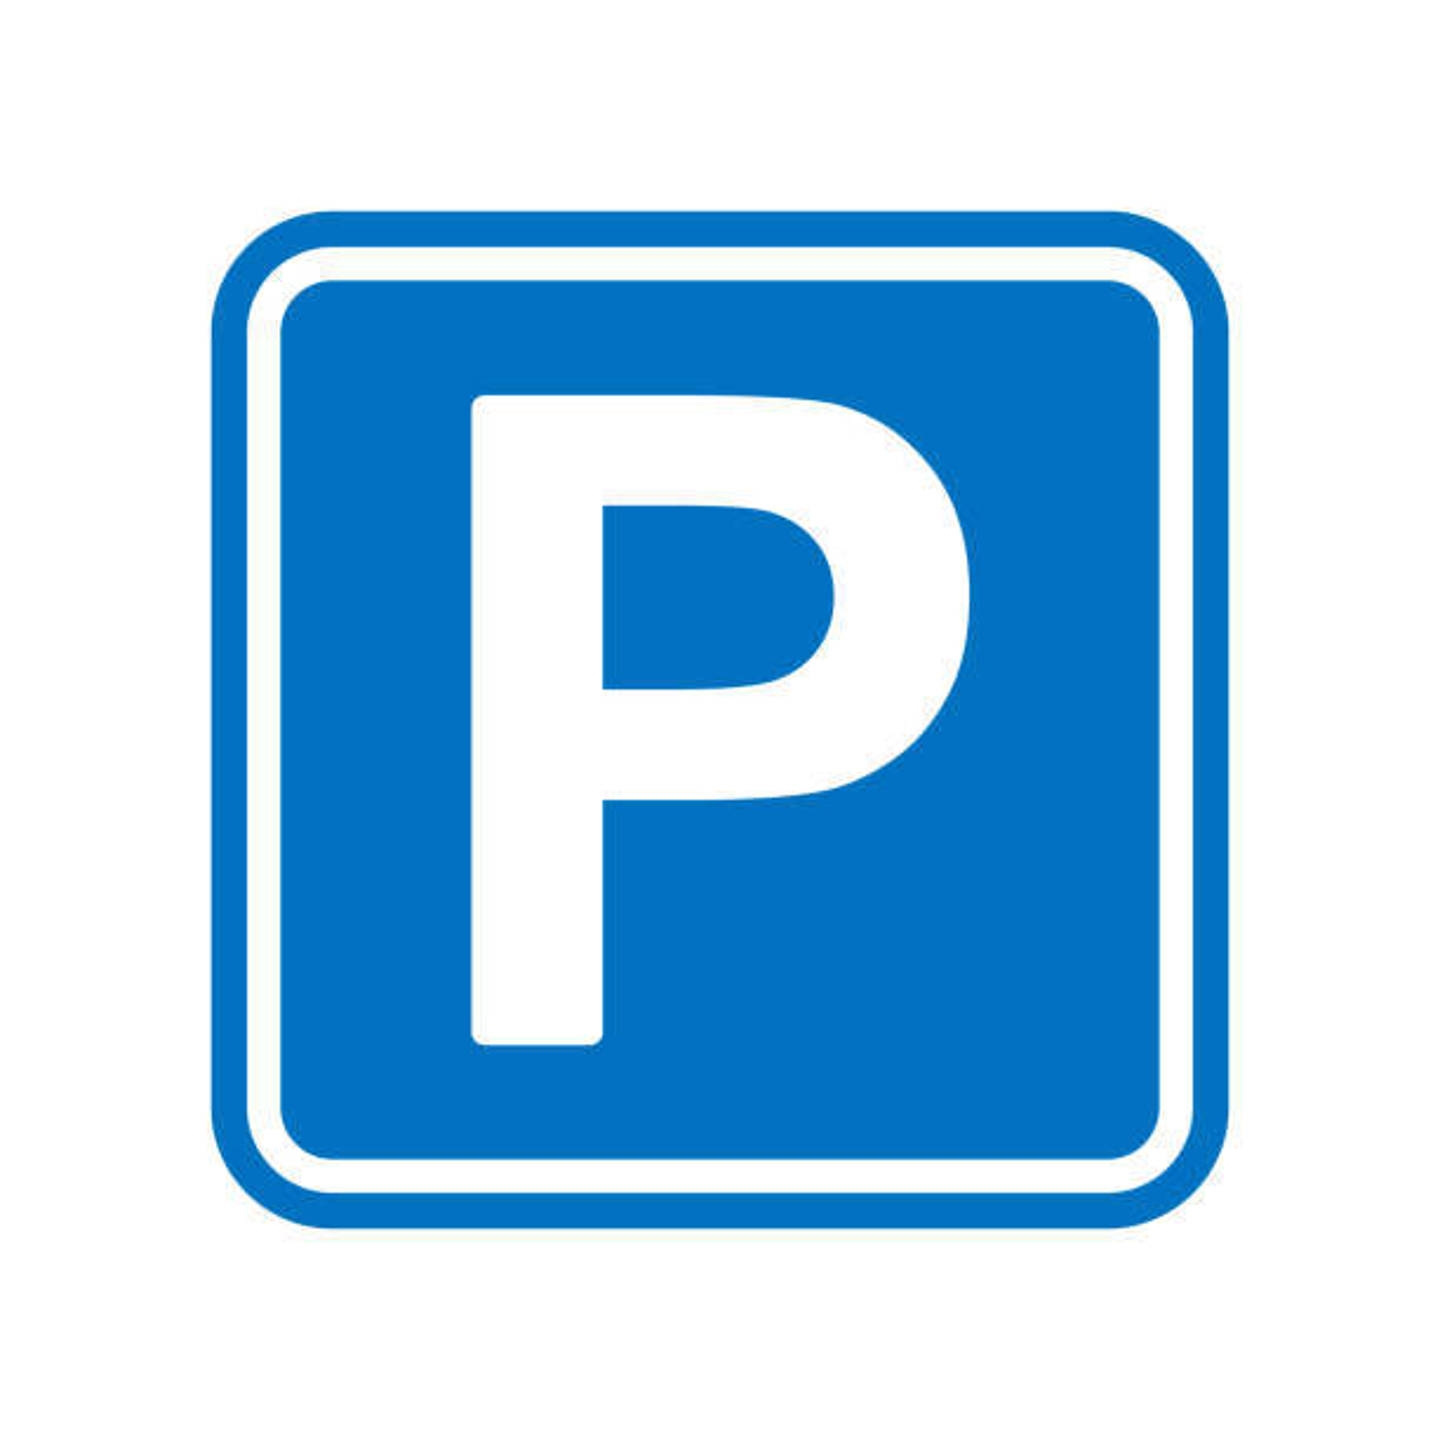 Parking & garage te  koop in Neder-Over-Heembeek 1120 82400.00€  slaapkamers 12.50m² - Zoekertje 1324759